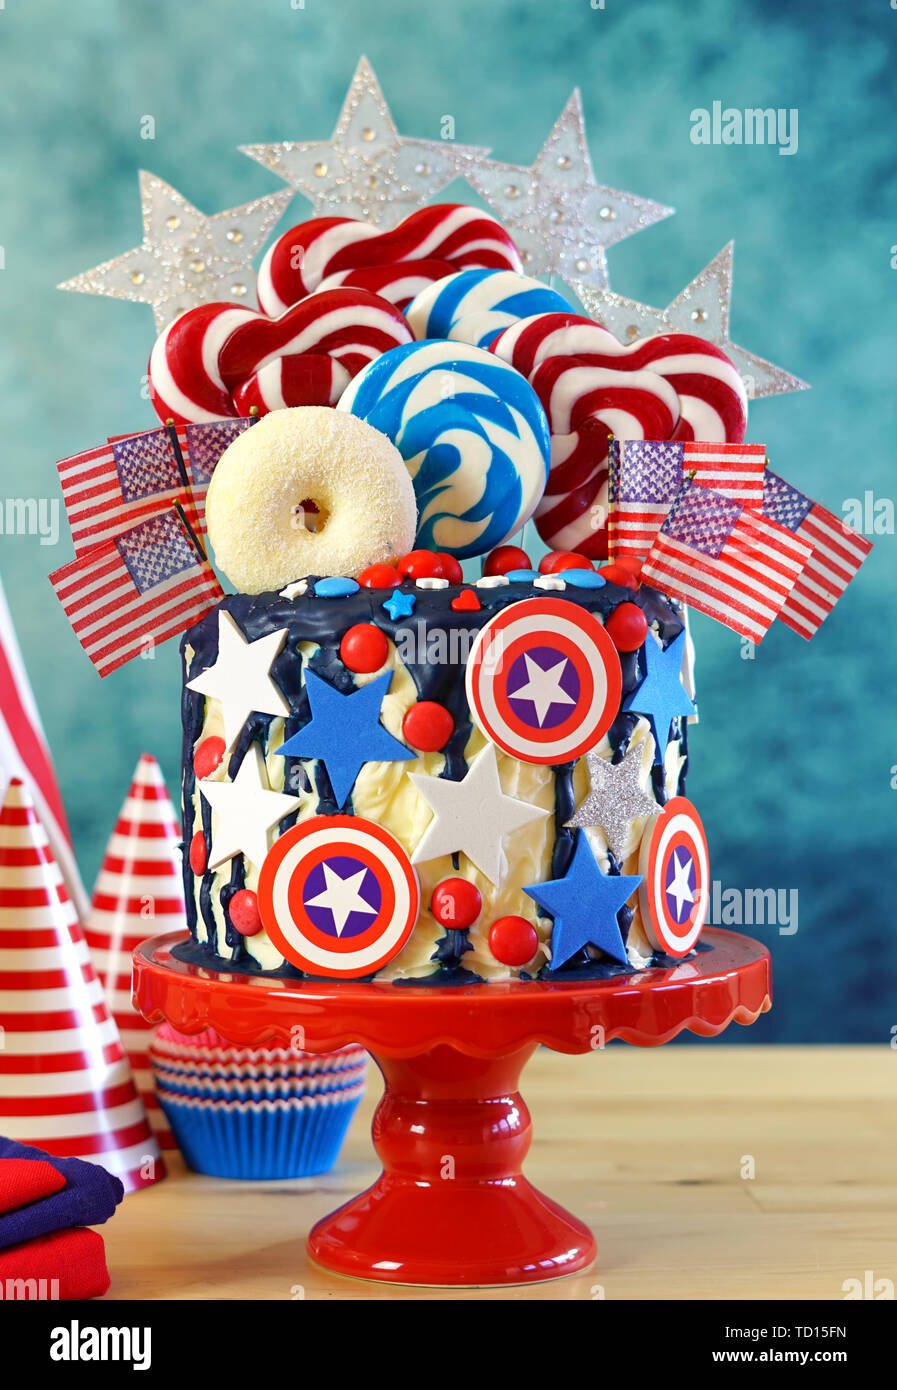 USA tema sul trend candyland fantasia torta di gocciolamento con decorazioni colorate in parte messa in tavola. Foto Stock